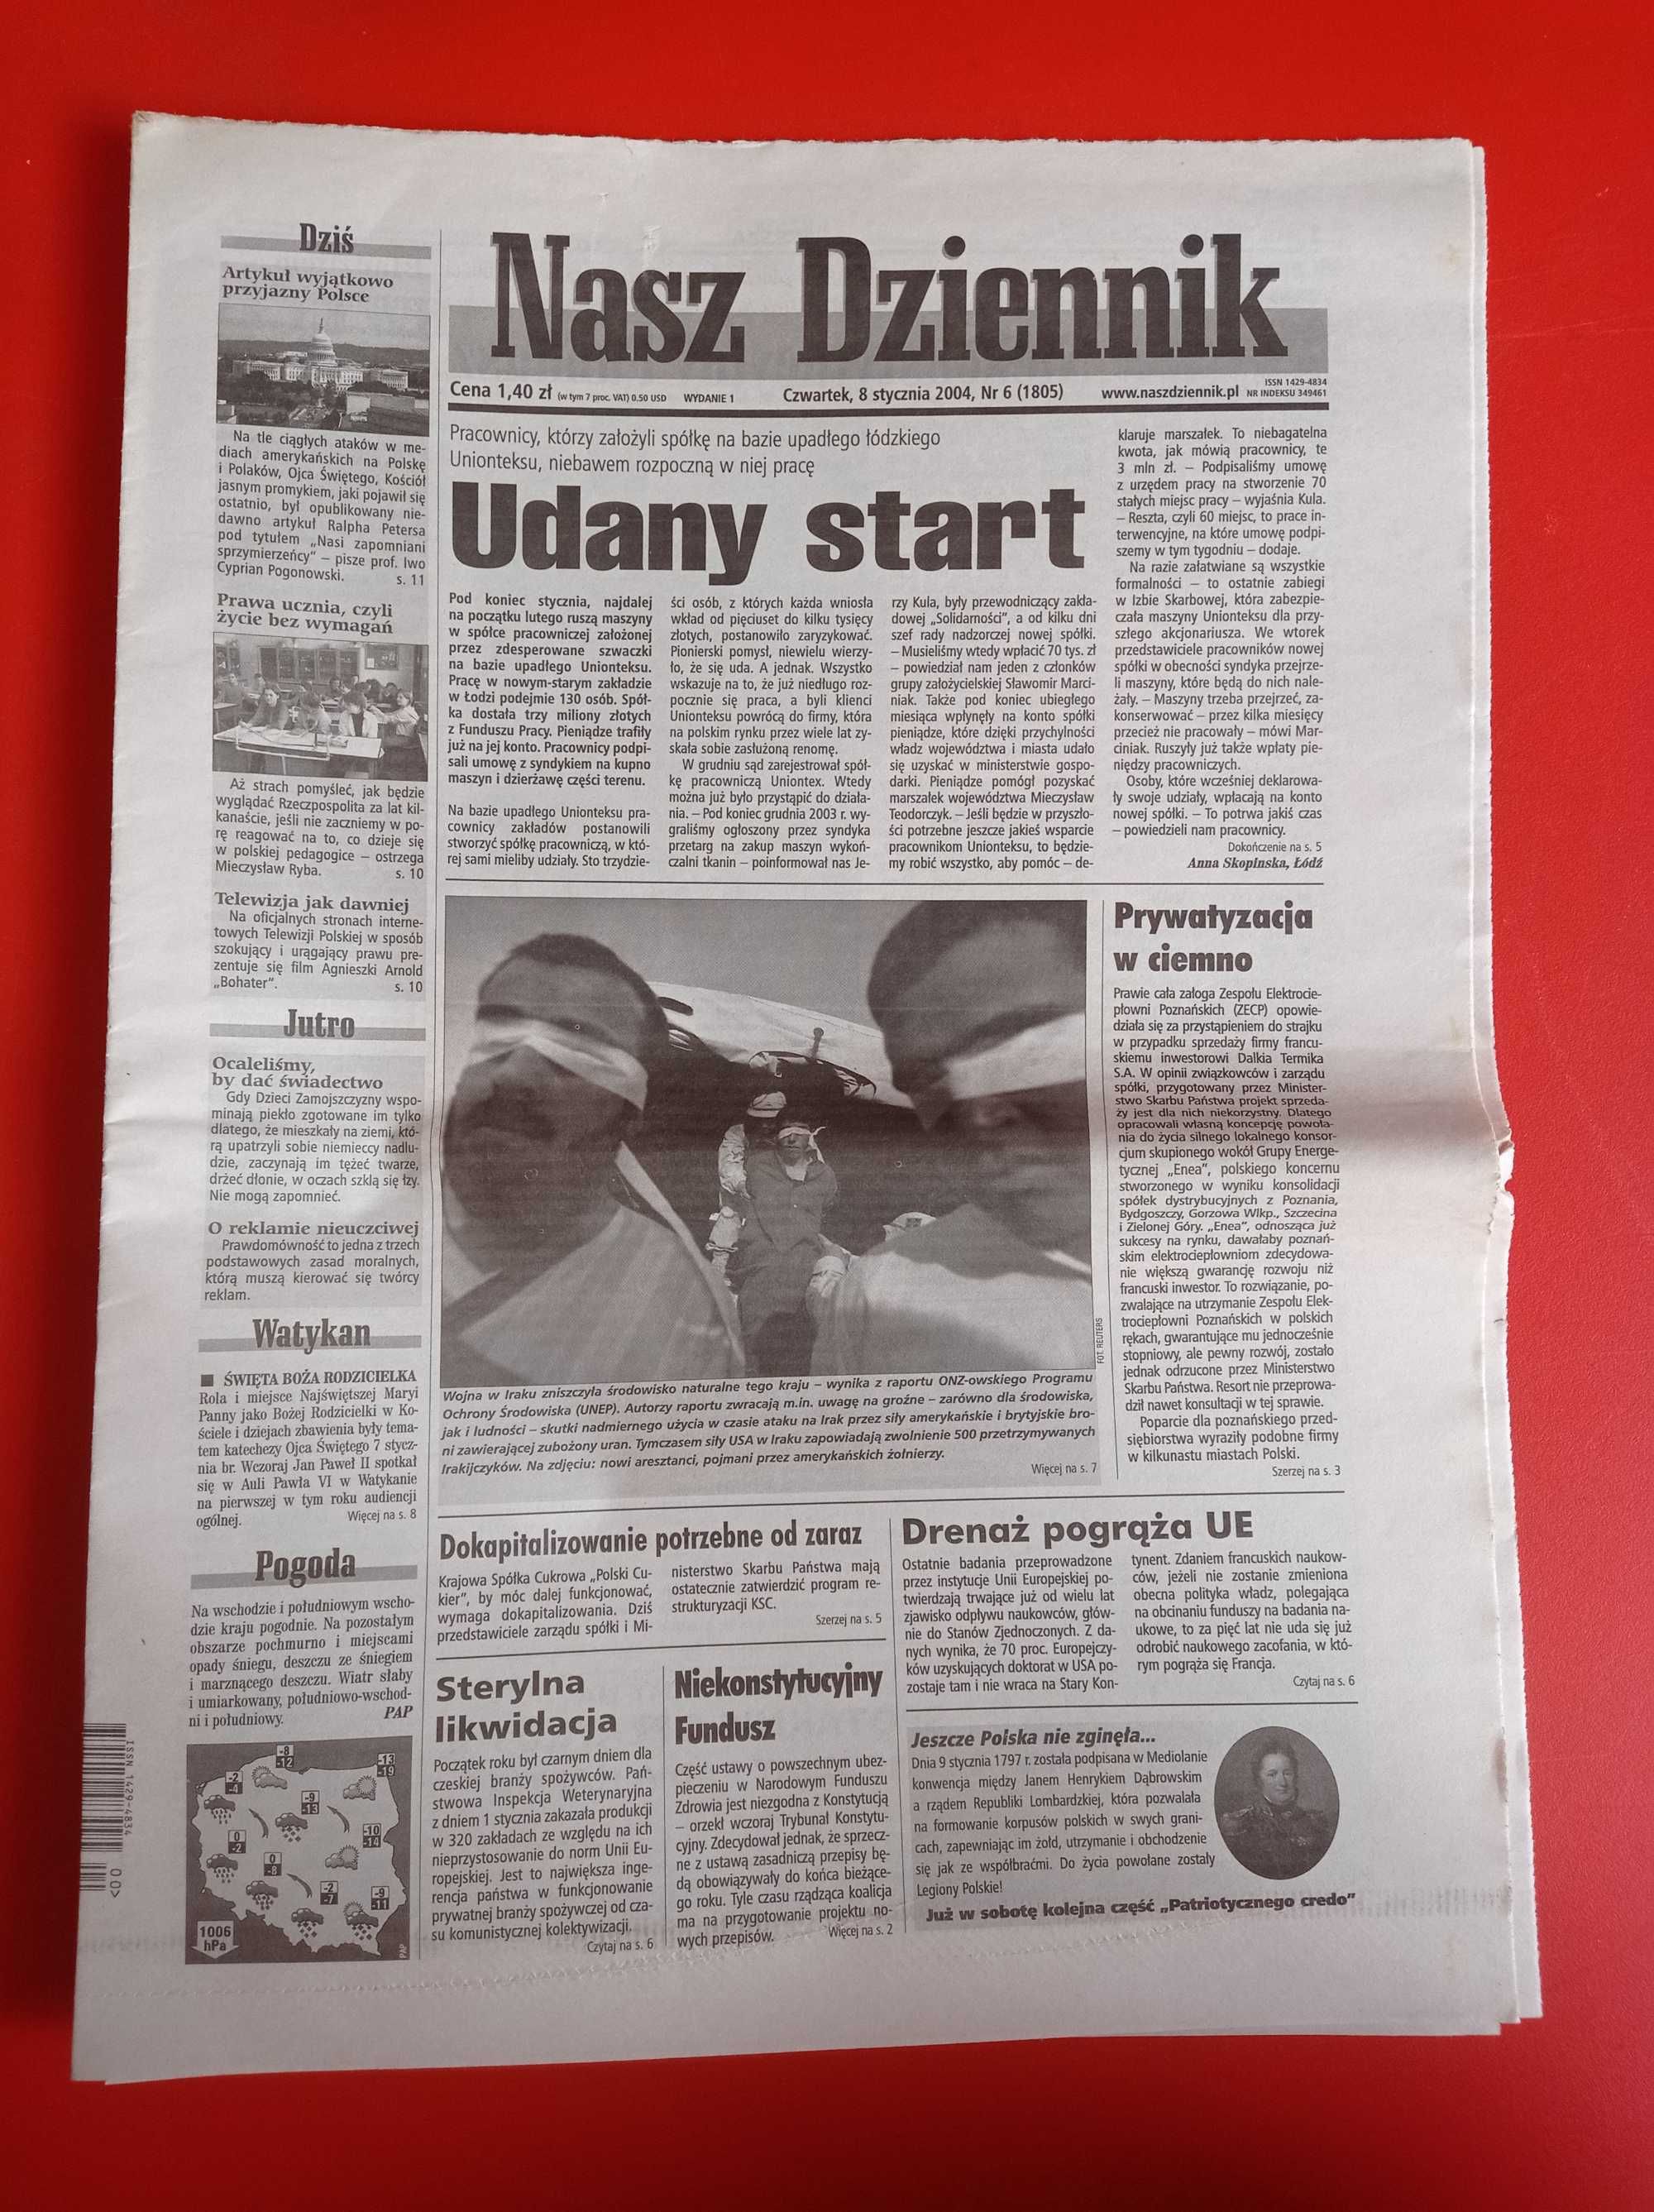 Nasz Dziennik, nr 6/2004, 8 stycznia 2004